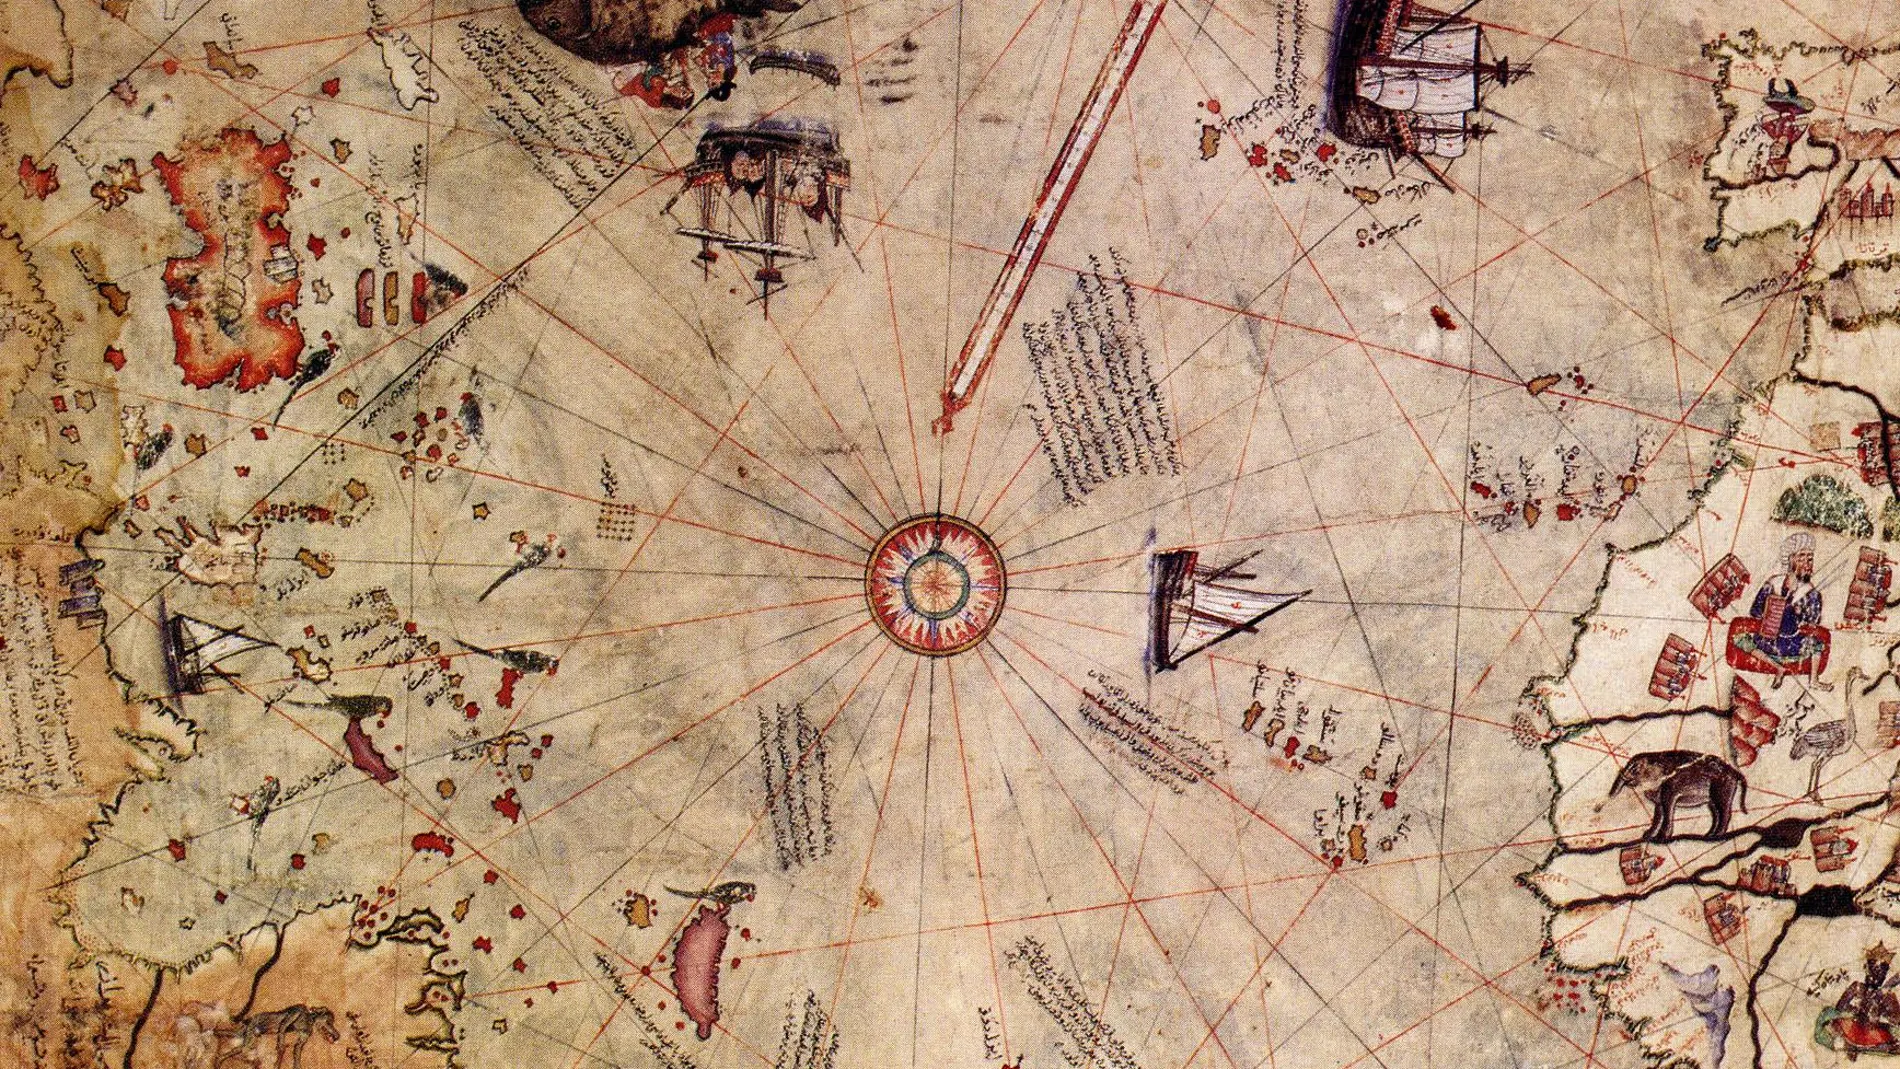 Como en el océano, para navegar en el mundo de los números hace falta un mapa. En la imagen, un fragmento de un mapa del geógrafo otomano Piri Reis, del año 1513. En él se muestra el Atlántico Norte, con la costa americana a la izquierda y las costas europea y africana a la derecha.